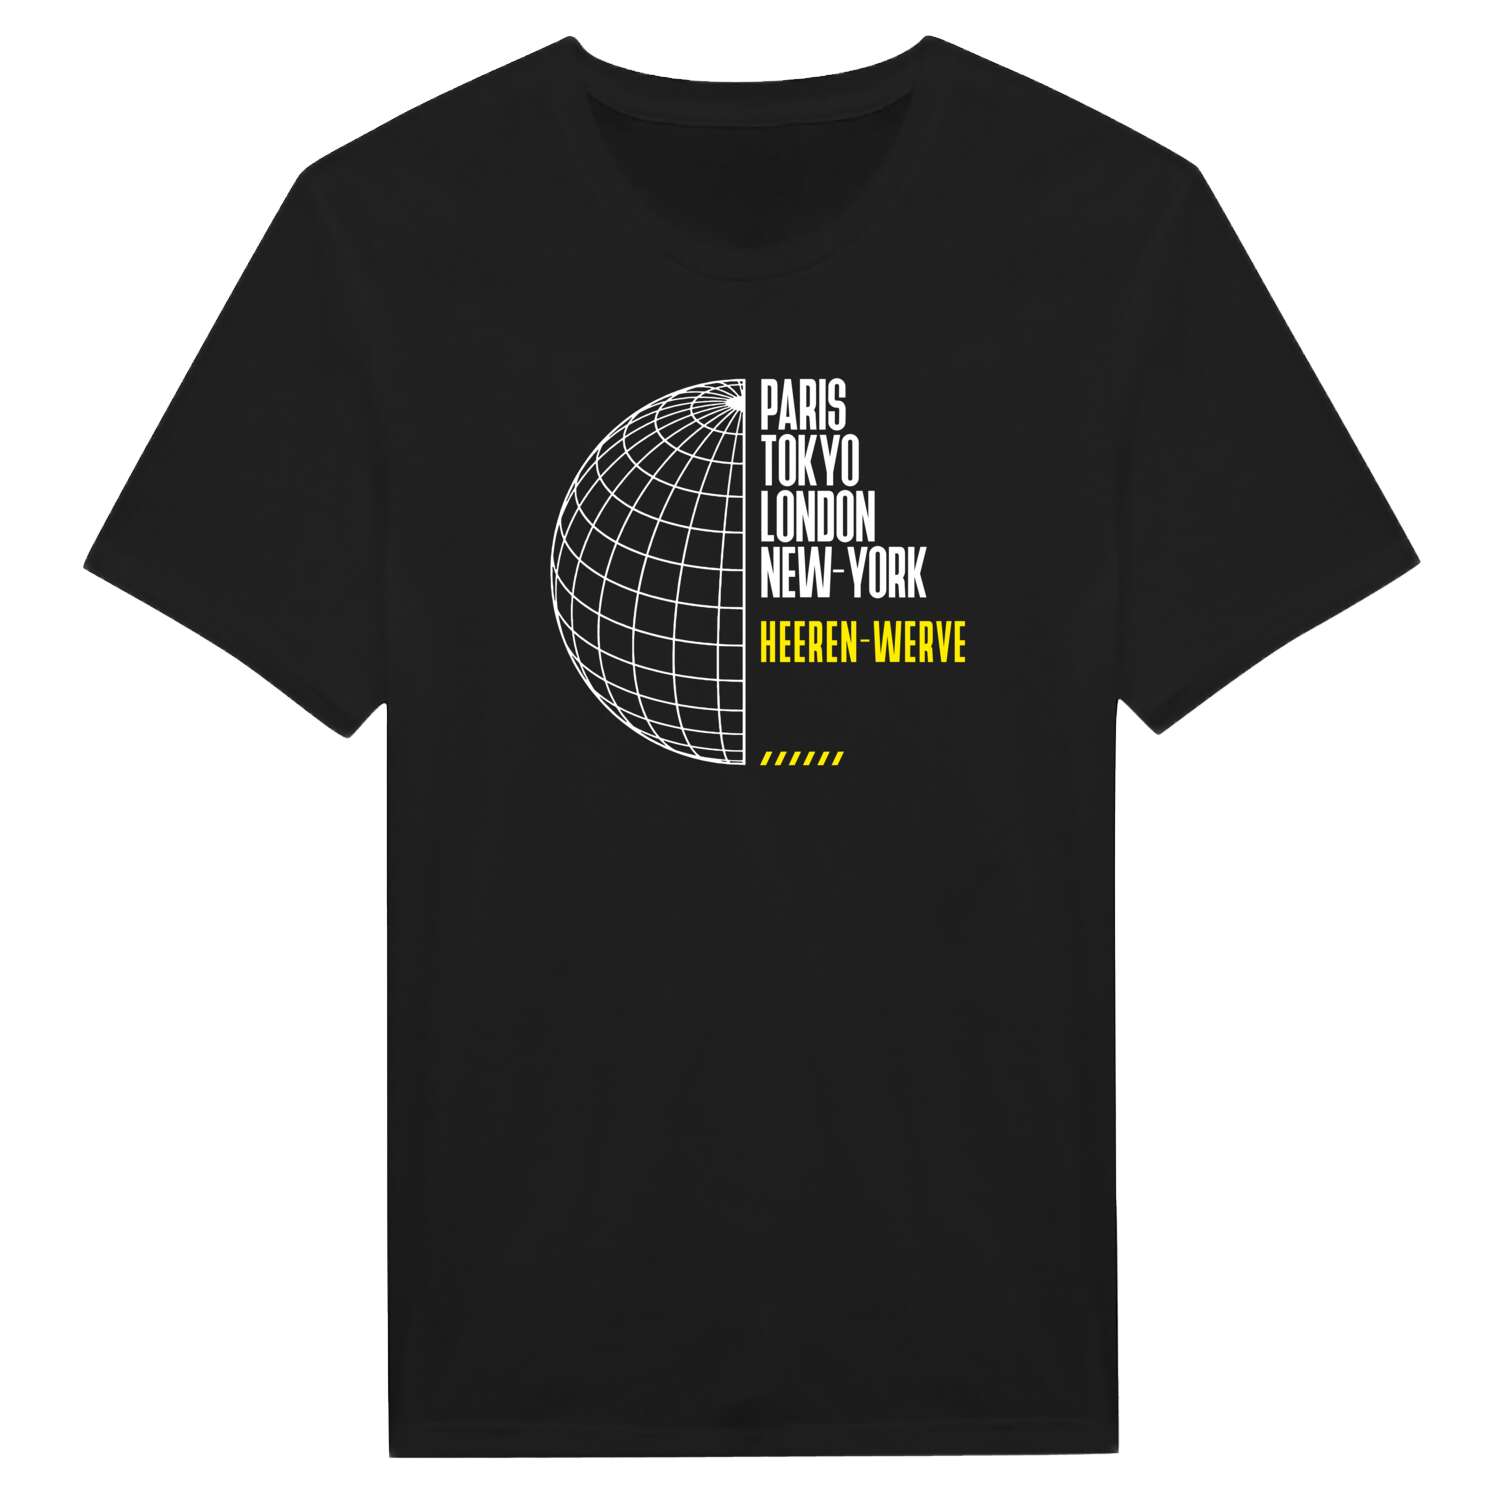 Heeren-Werve T-Shirt »Paris Tokyo London«